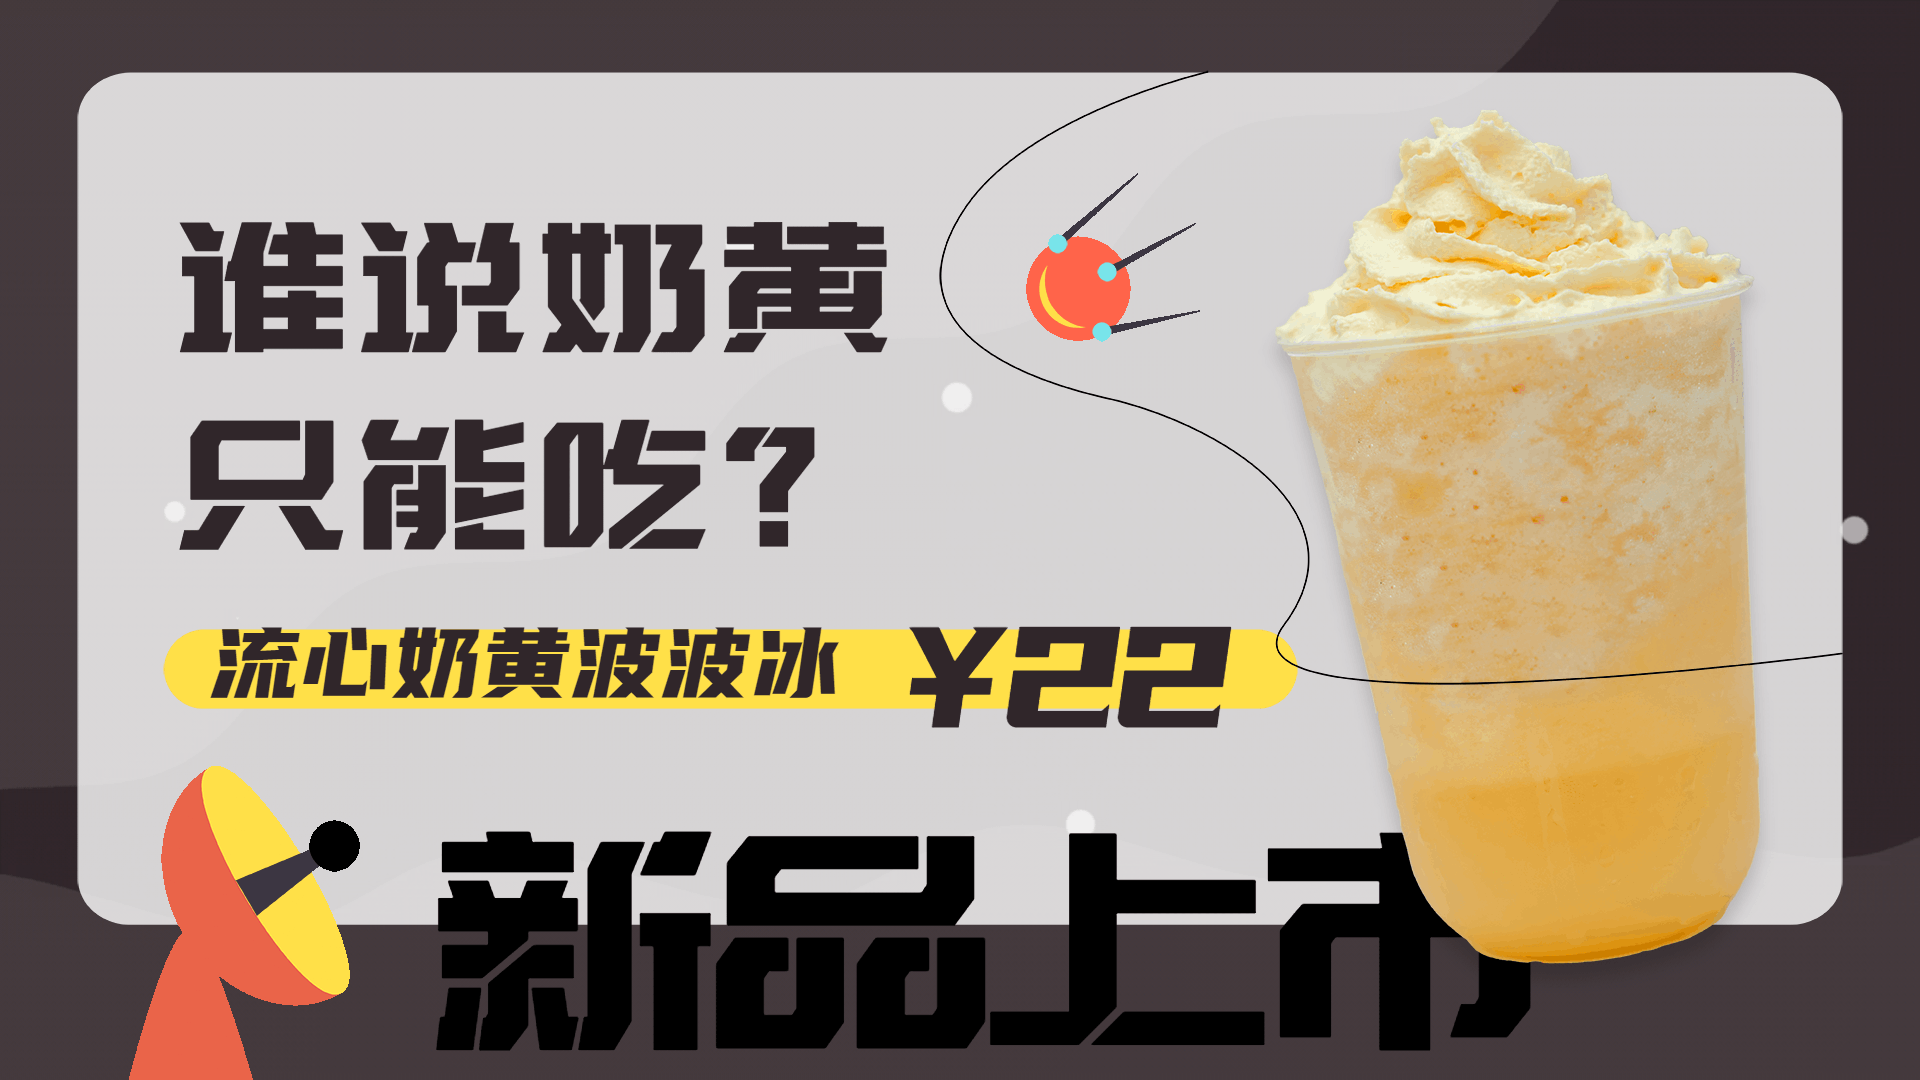 奶茶饮品新品上市促销活动电视屏横屏动图